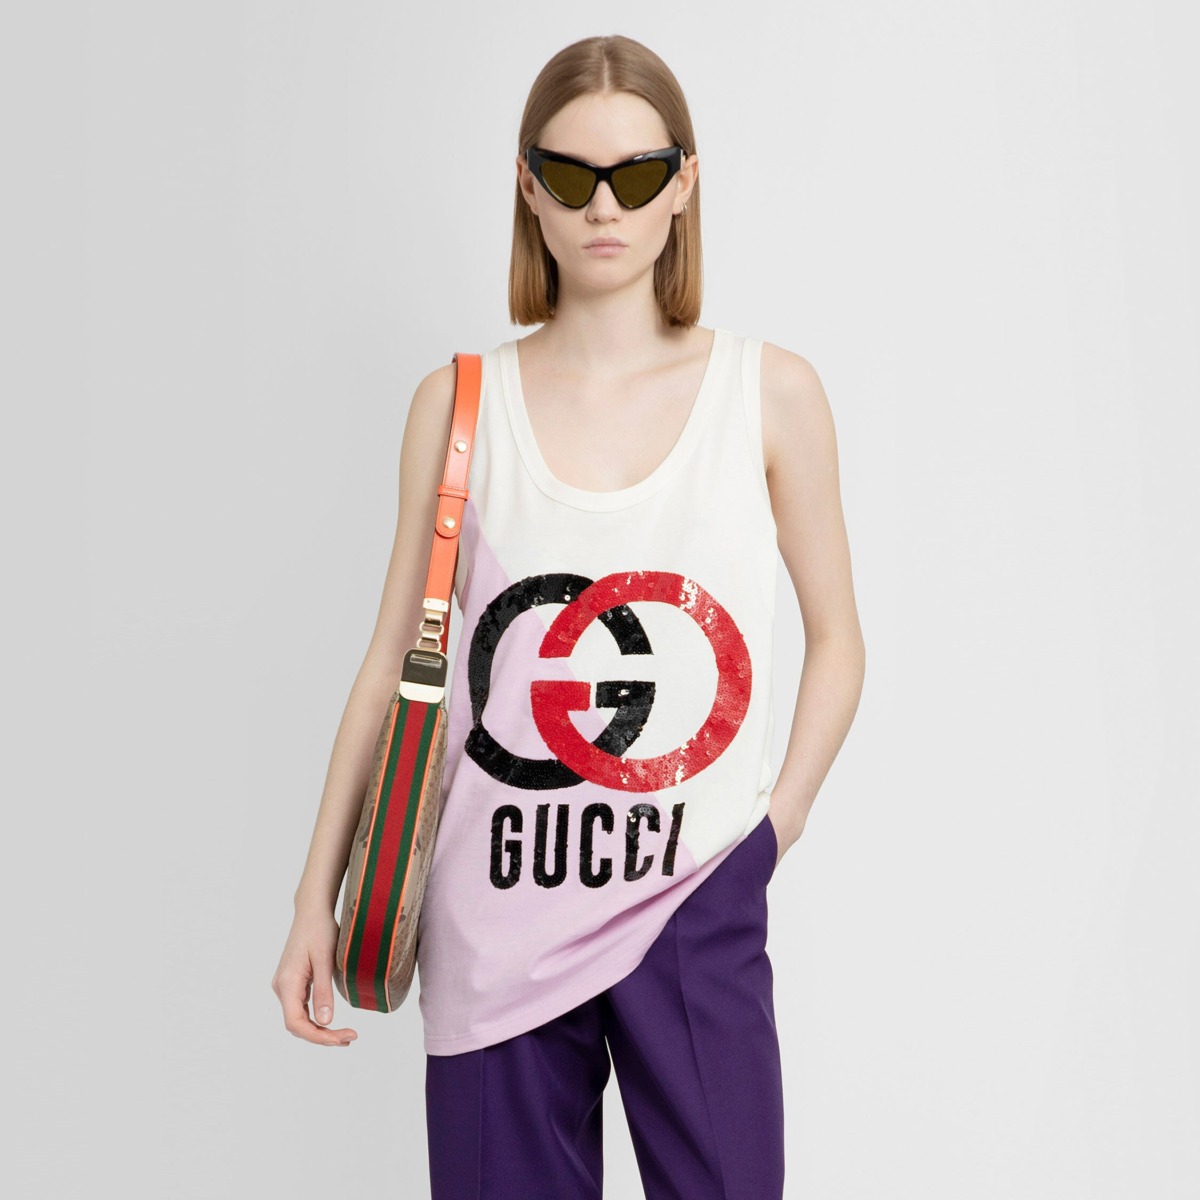 Gucci Womens Multicolor Tank Top by Antonioli GOOFASH